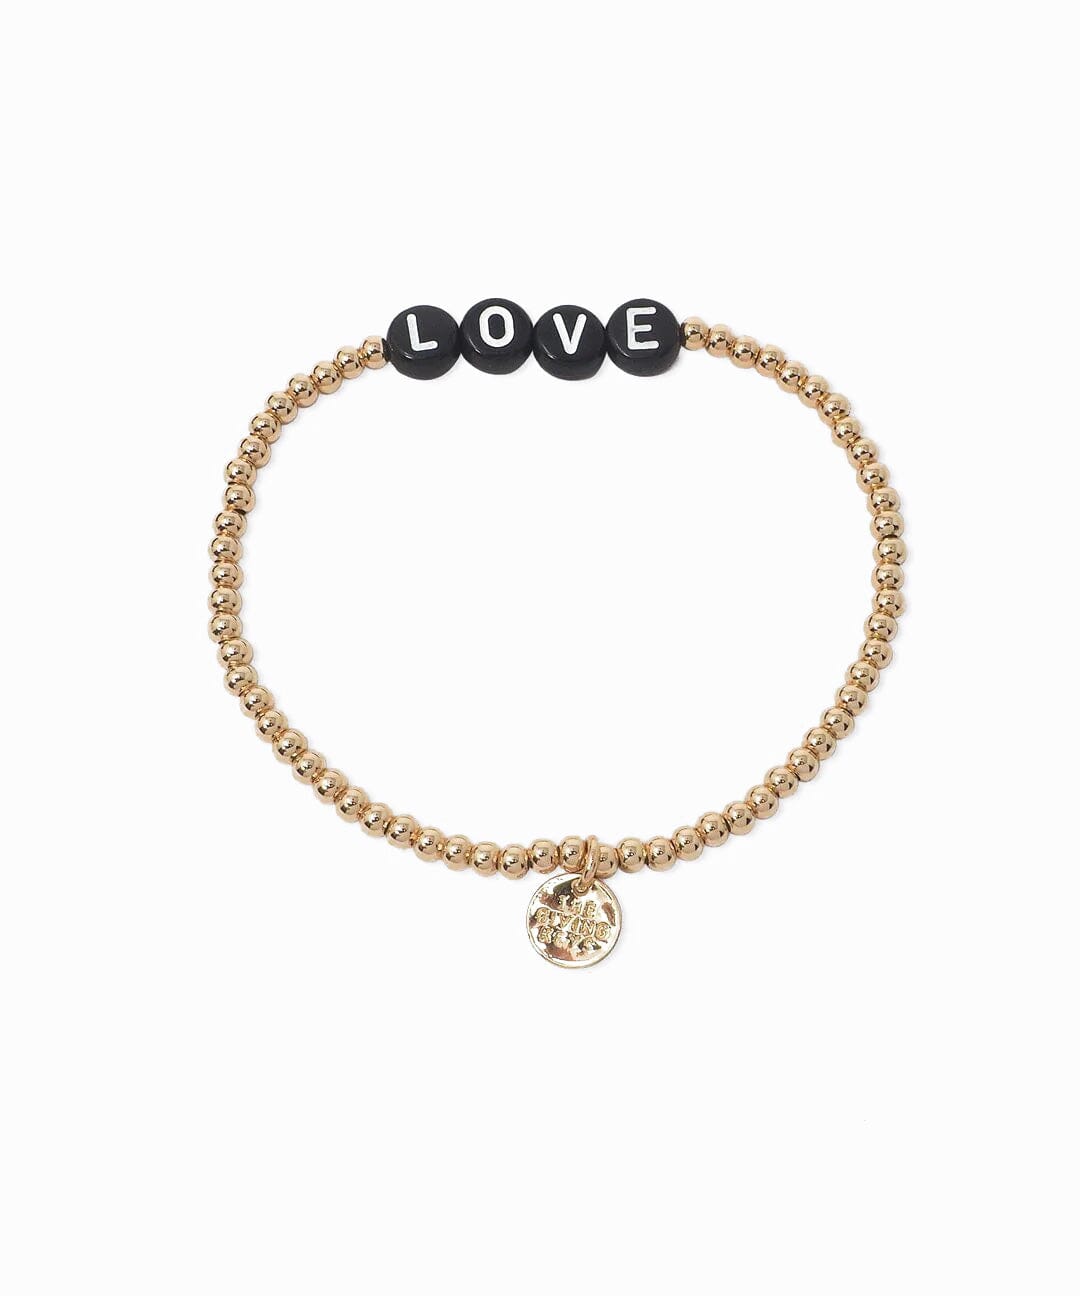 LOVE Beaded Bracelet Bracelets The Giving Keys GOLD 